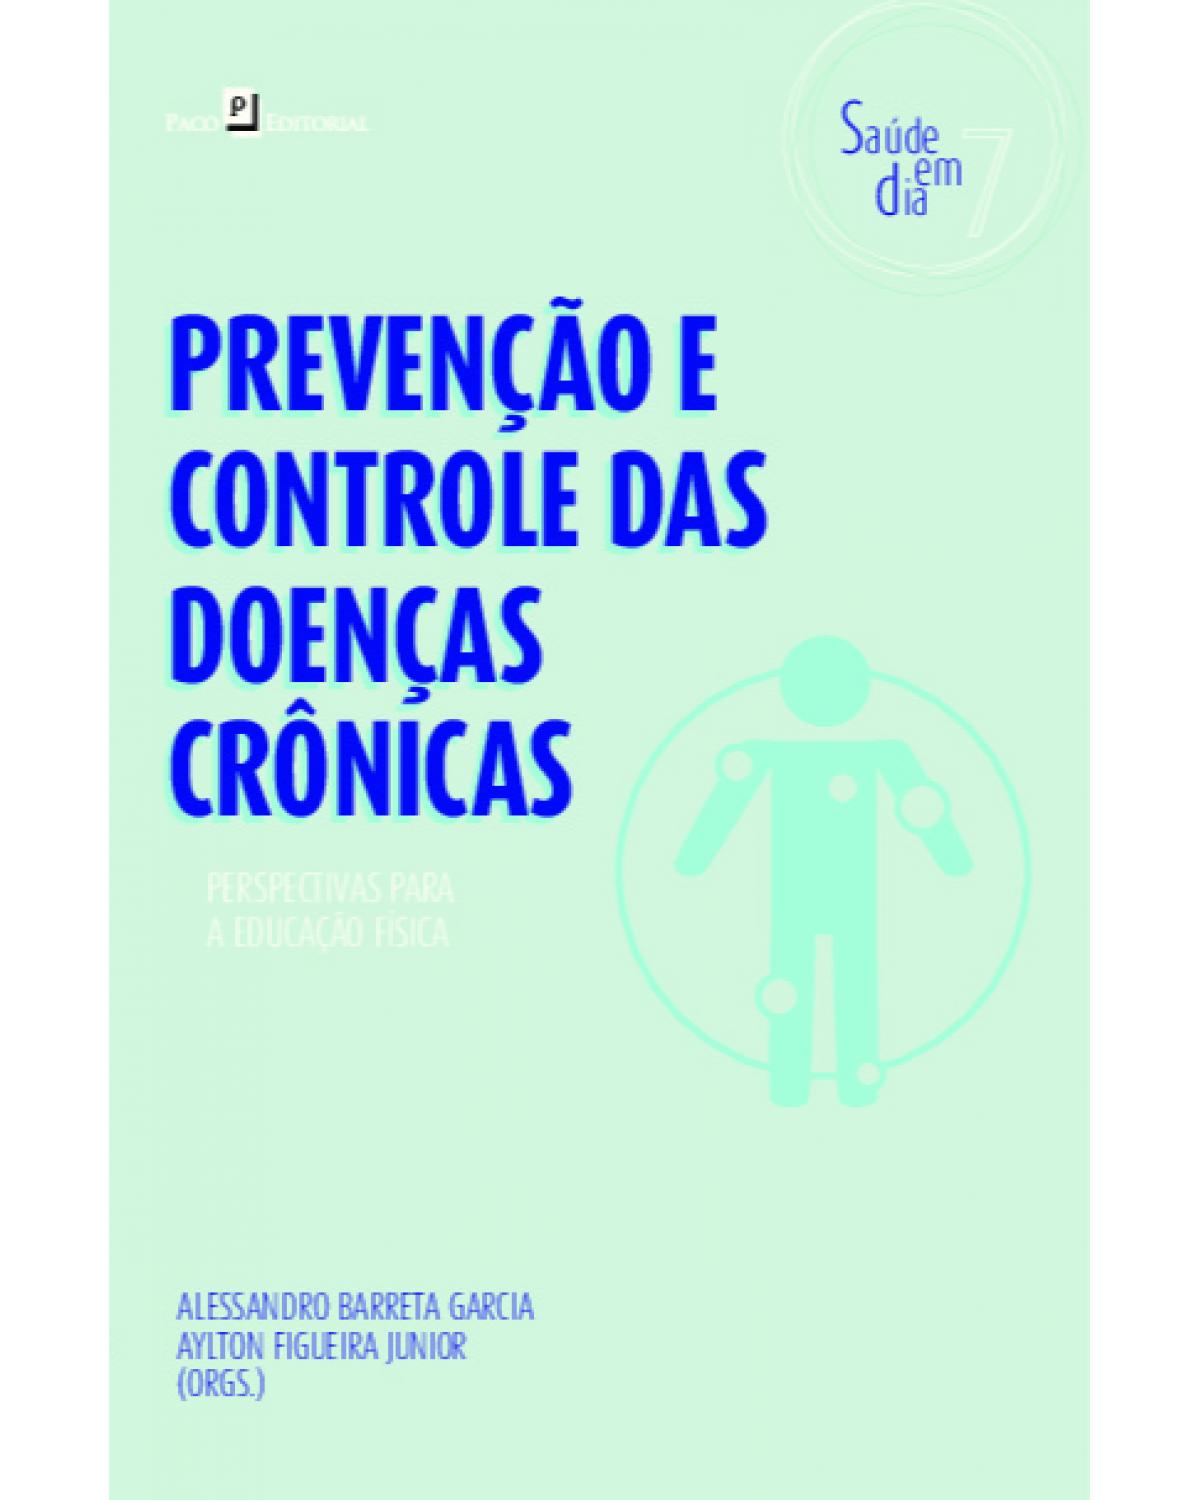 Prevenção e controle das doenças crônicas - Volume 7: perspectivas para a educação física - 1ª Edição | 2022